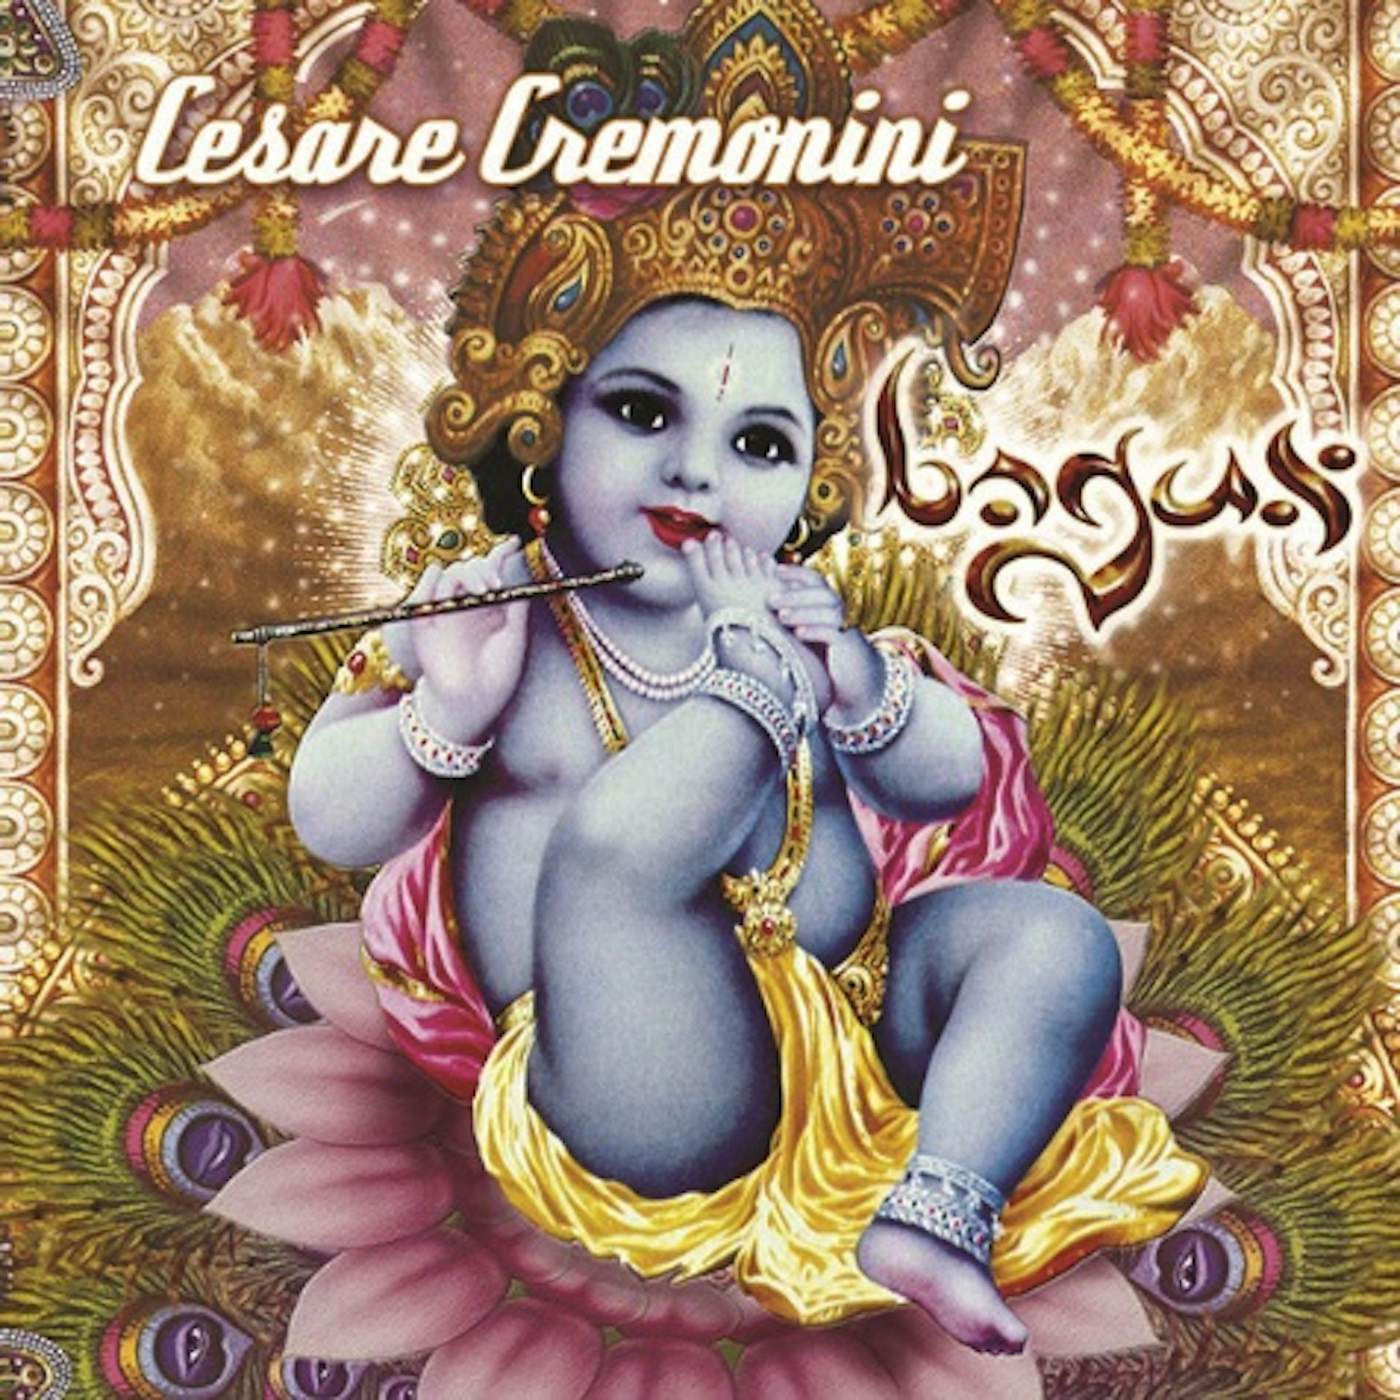 Cesare Cremonini BAGUS CD